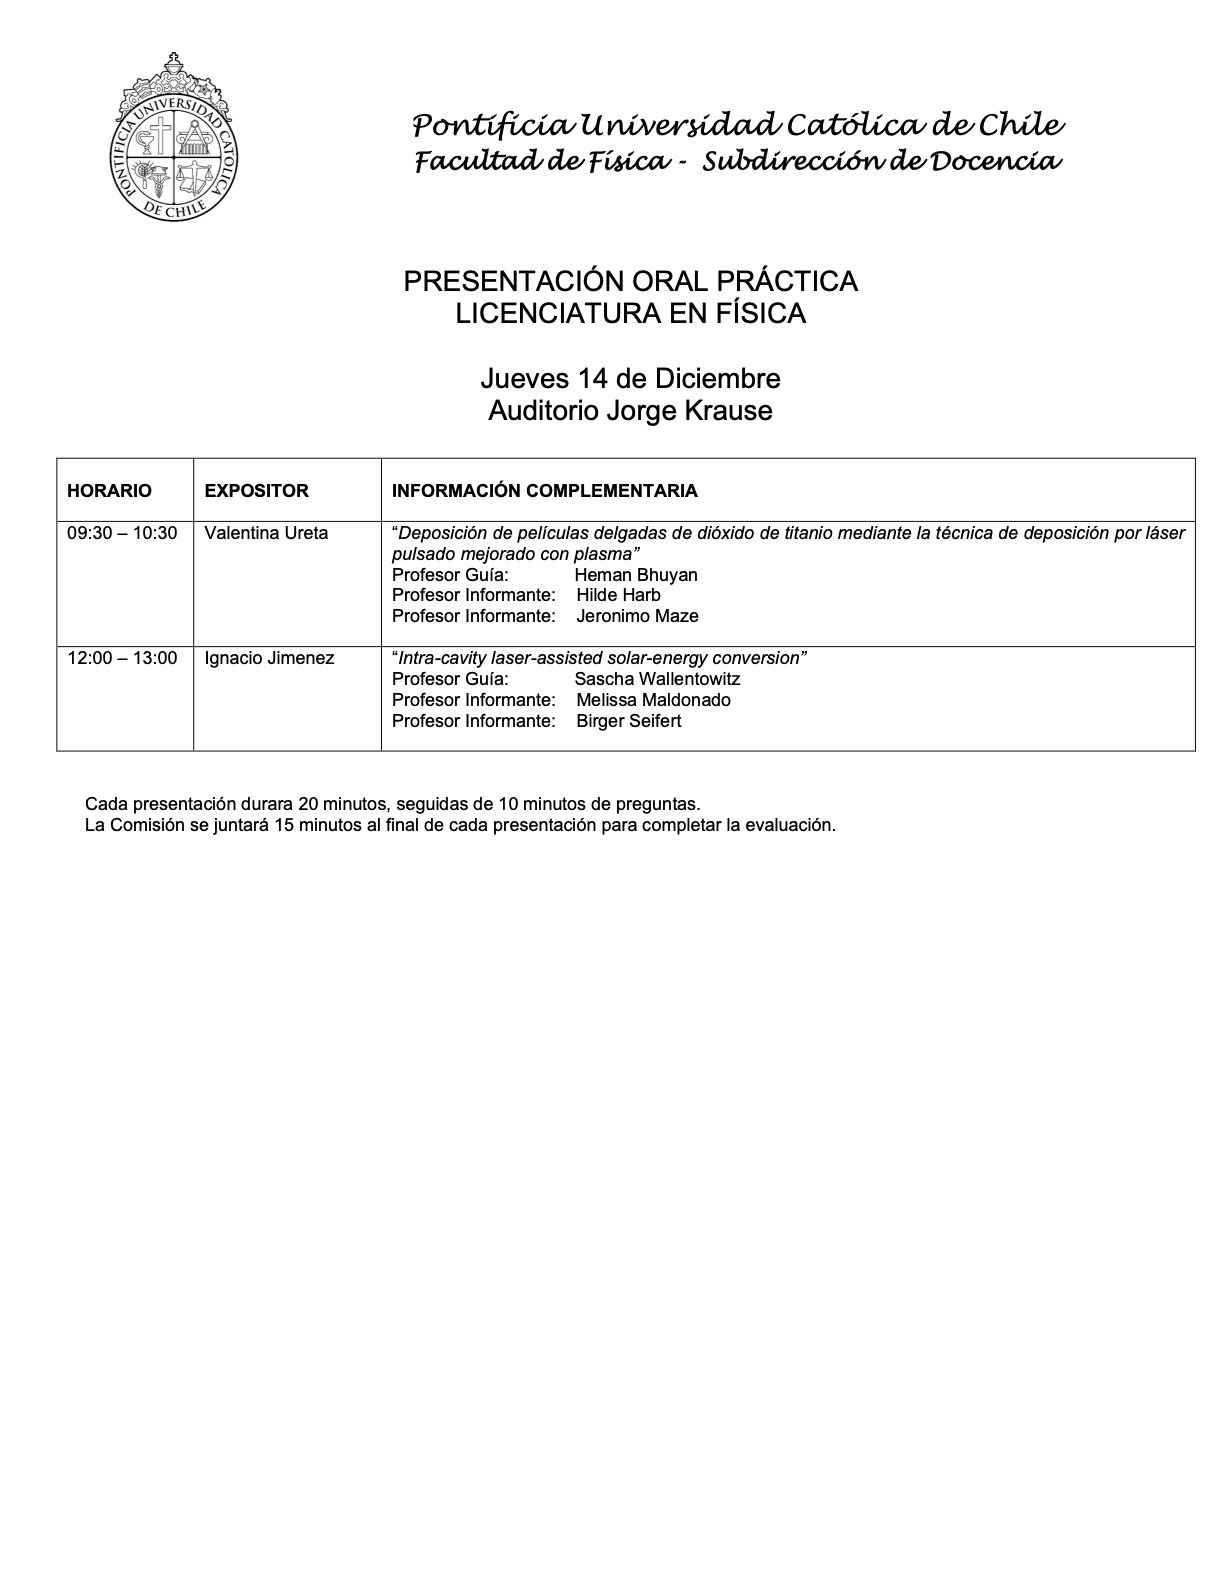 Presentación práctica de Licenciatura en Física (14/12) 